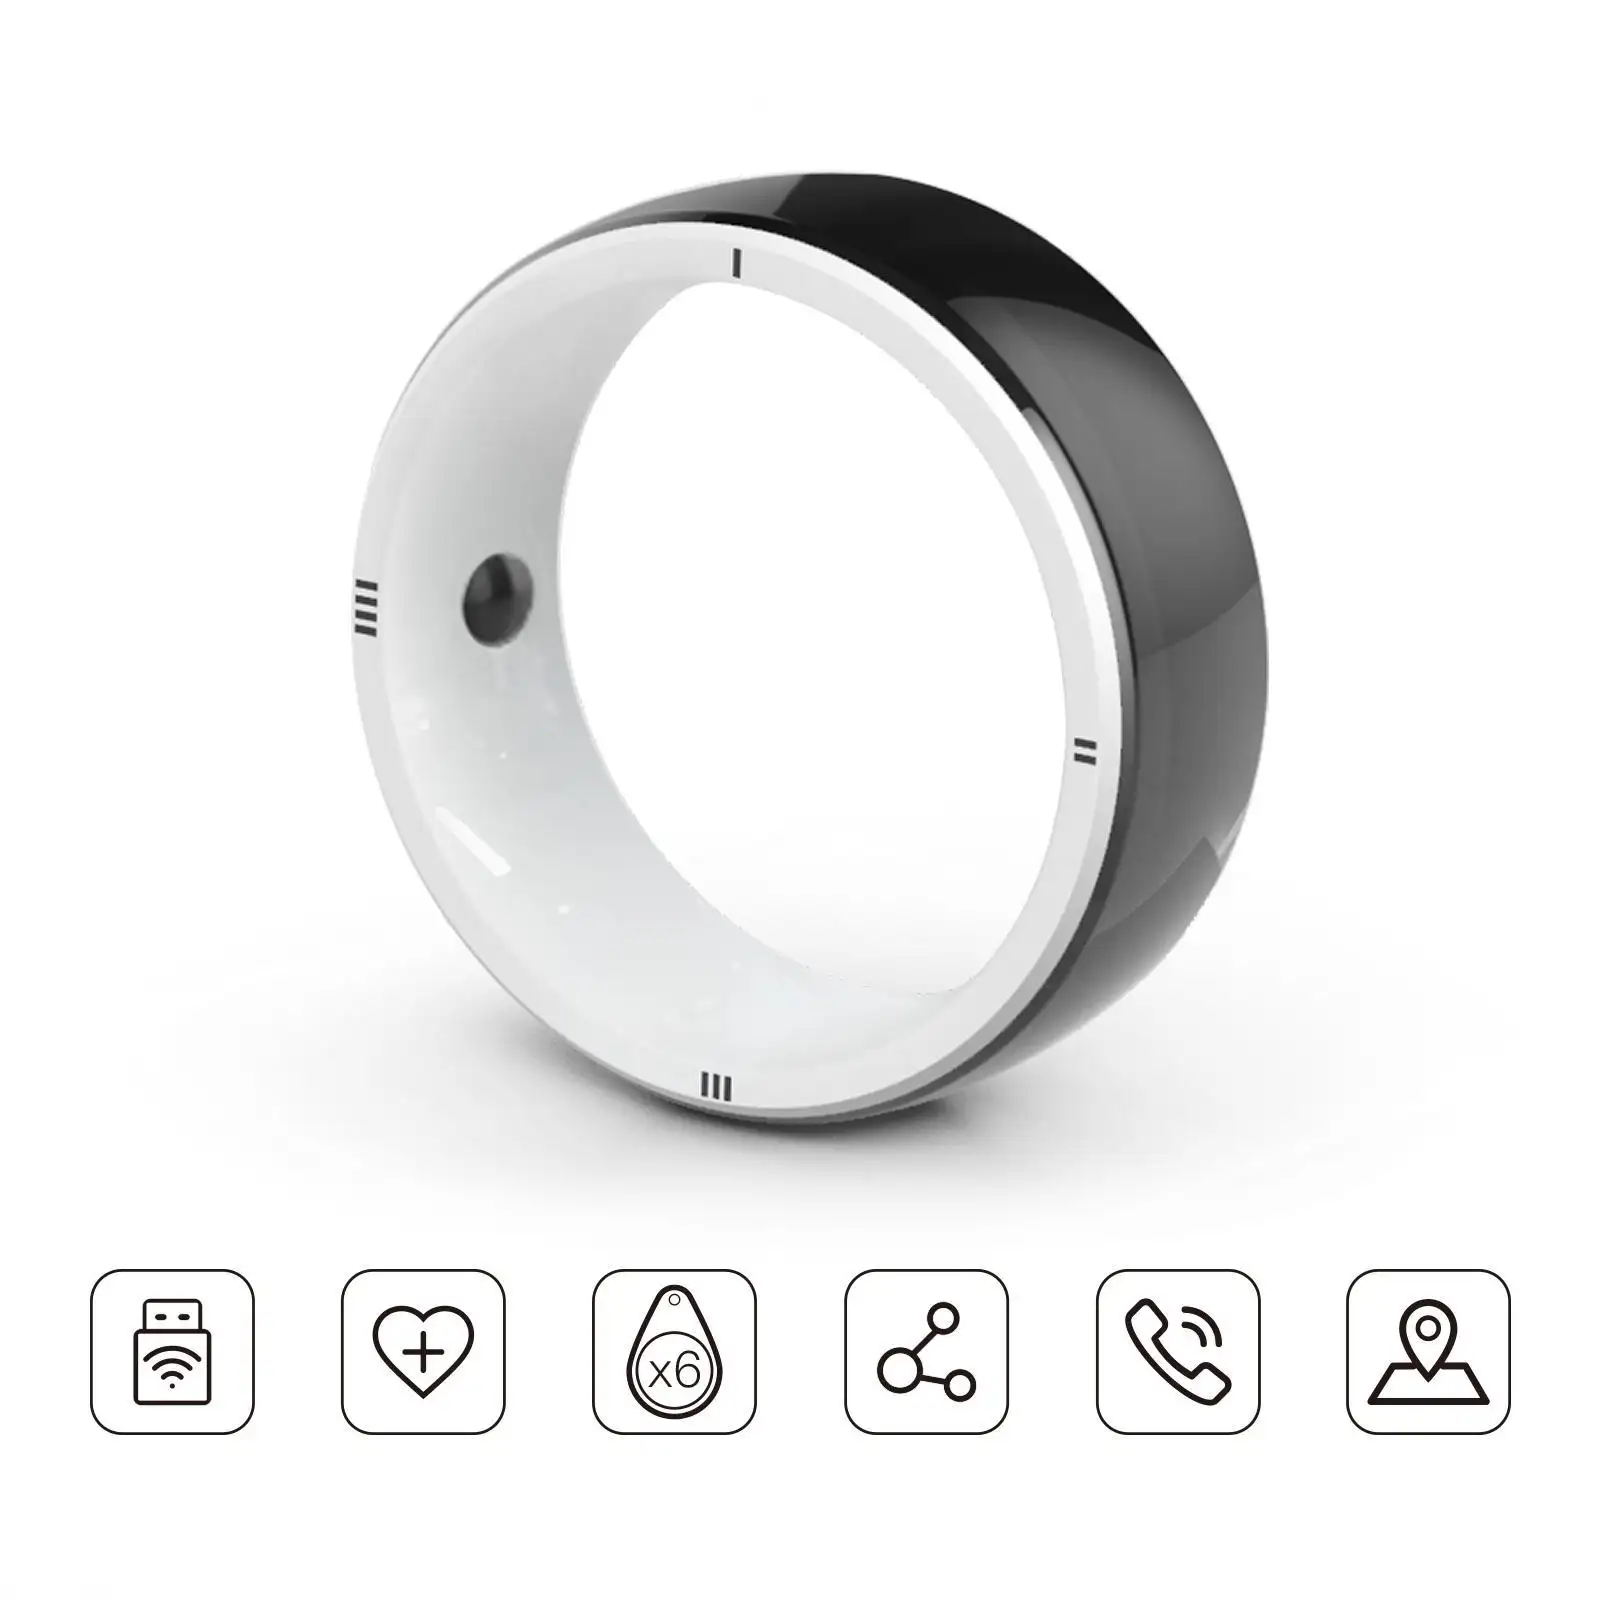 JAKCOM R5 טבעת חכמה חדשה טבעת חכמה המתנה הטובה ביותר עם נגן blu ray 2018 10 פינים מיני דין פרלג'ר טלוויזיה תושבת קיר נייד